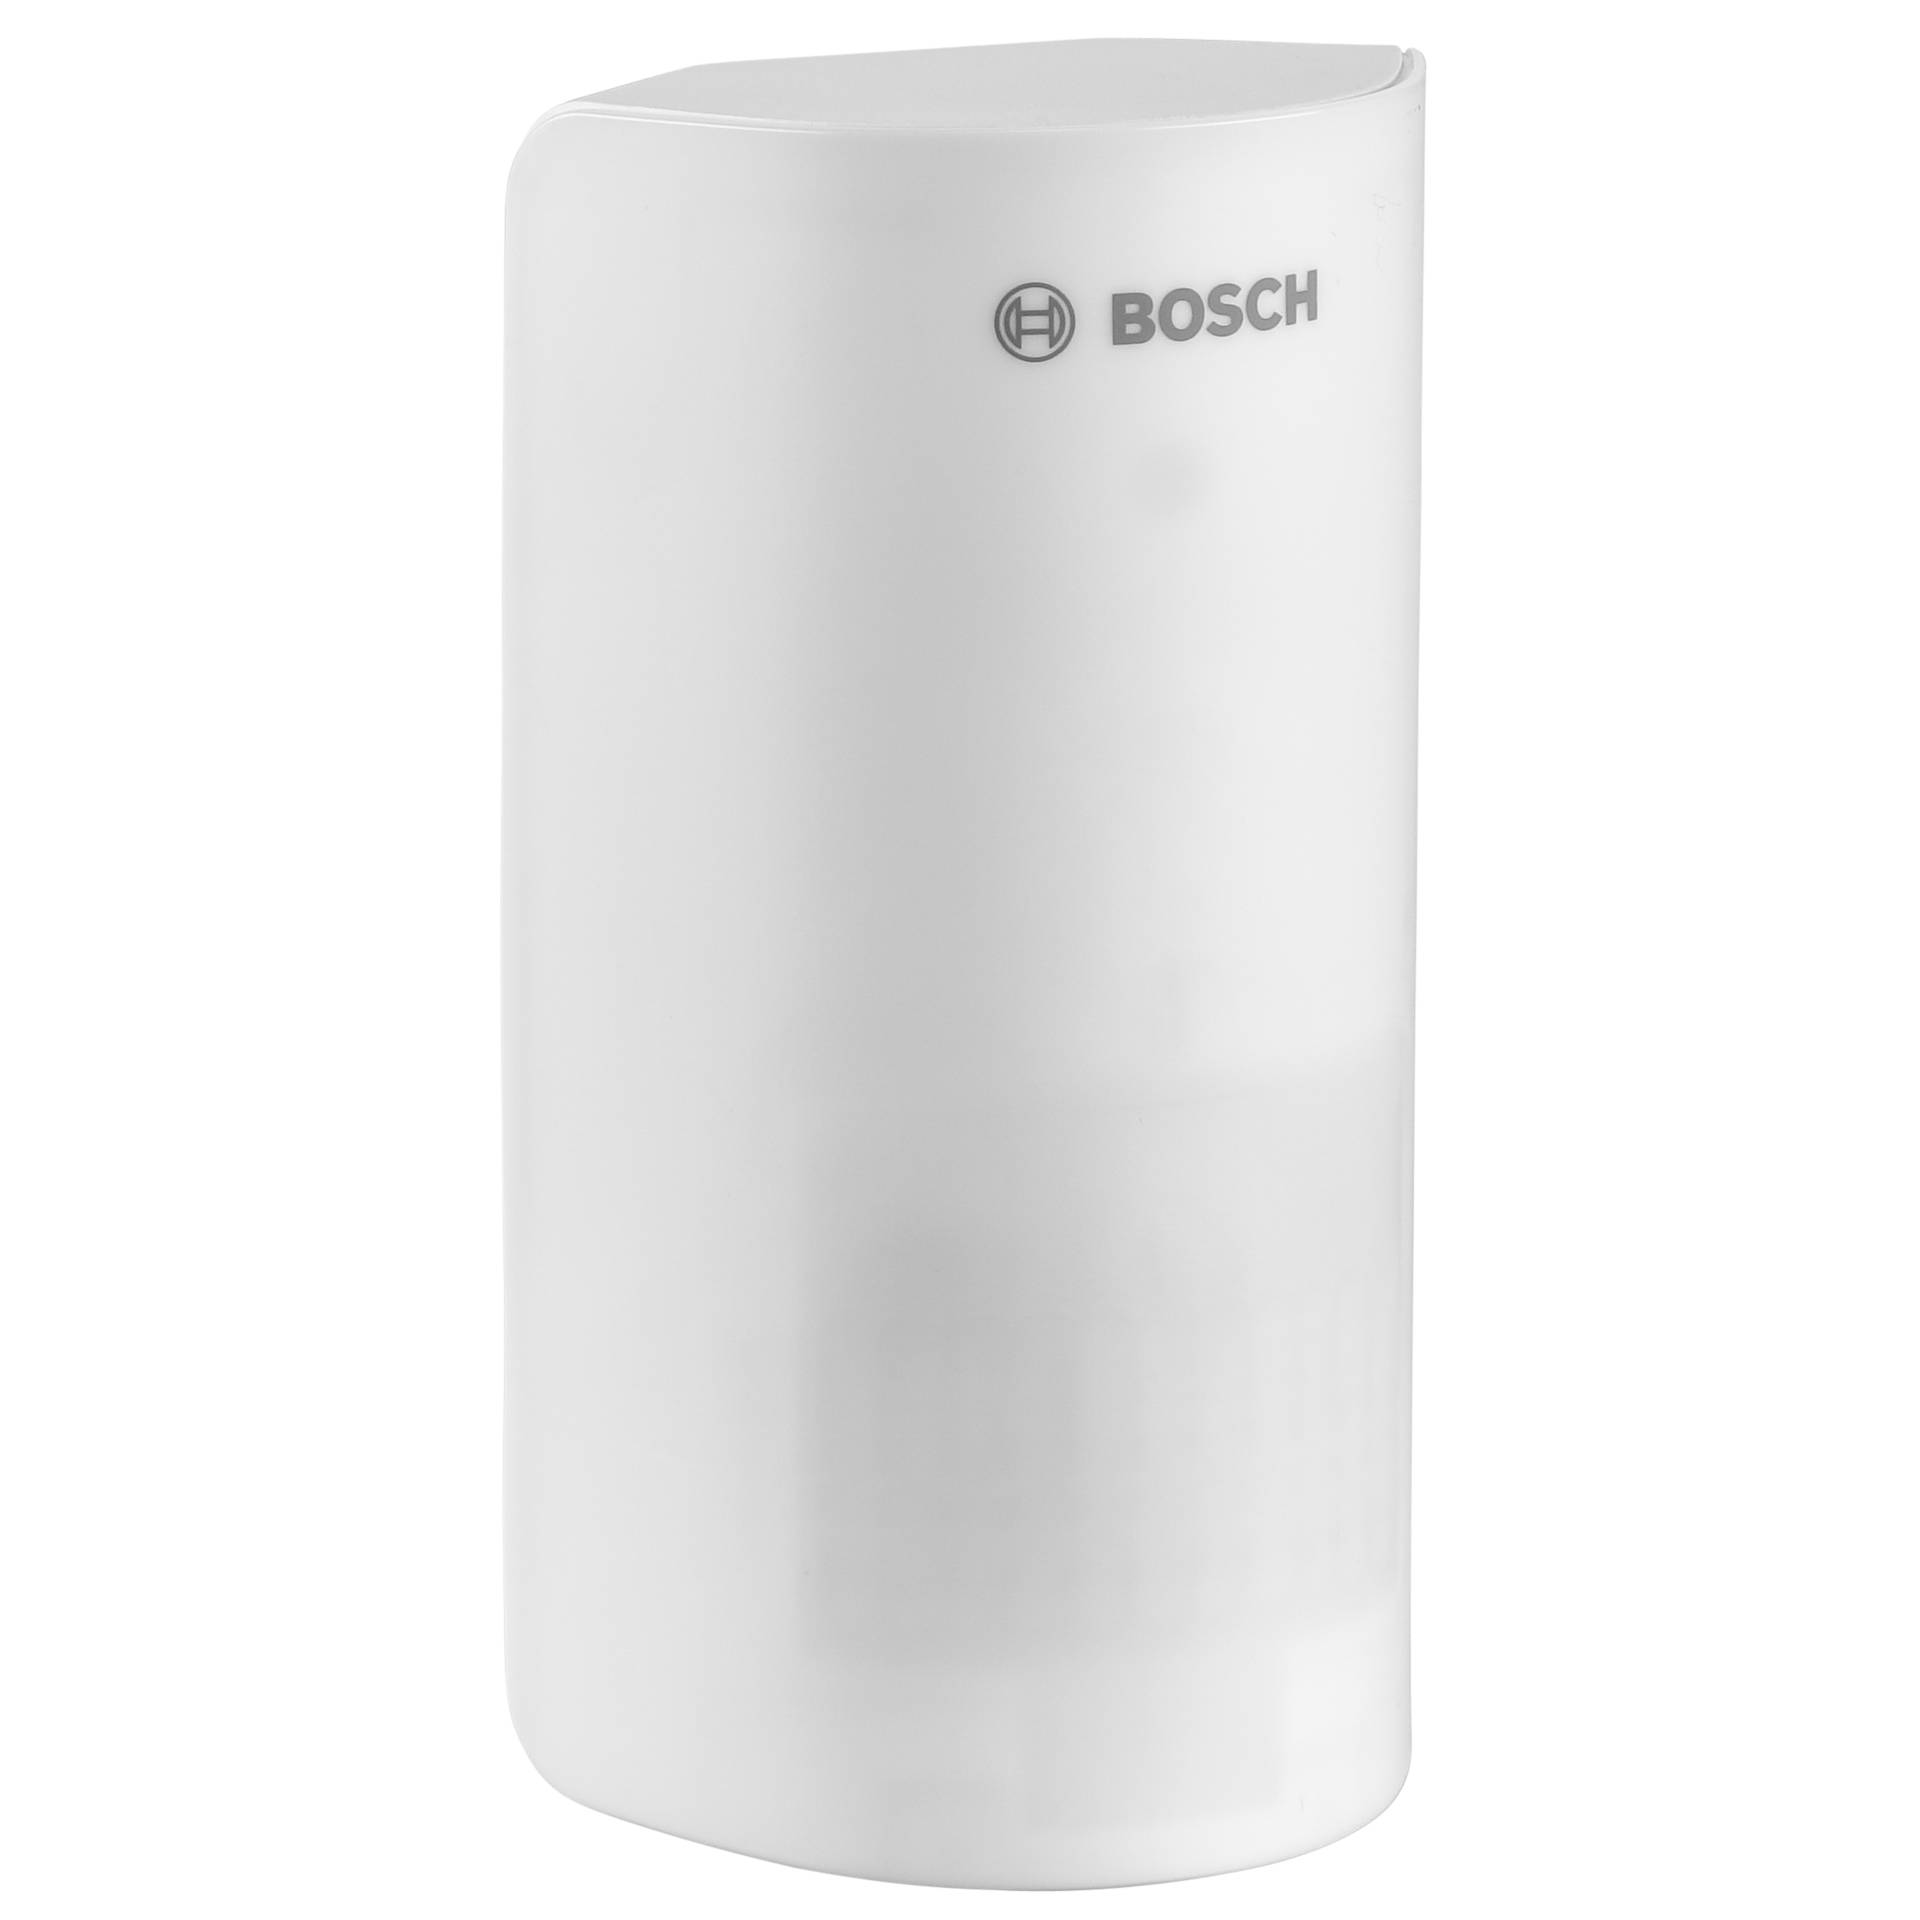 Bosch Smart Home sensore di movimento